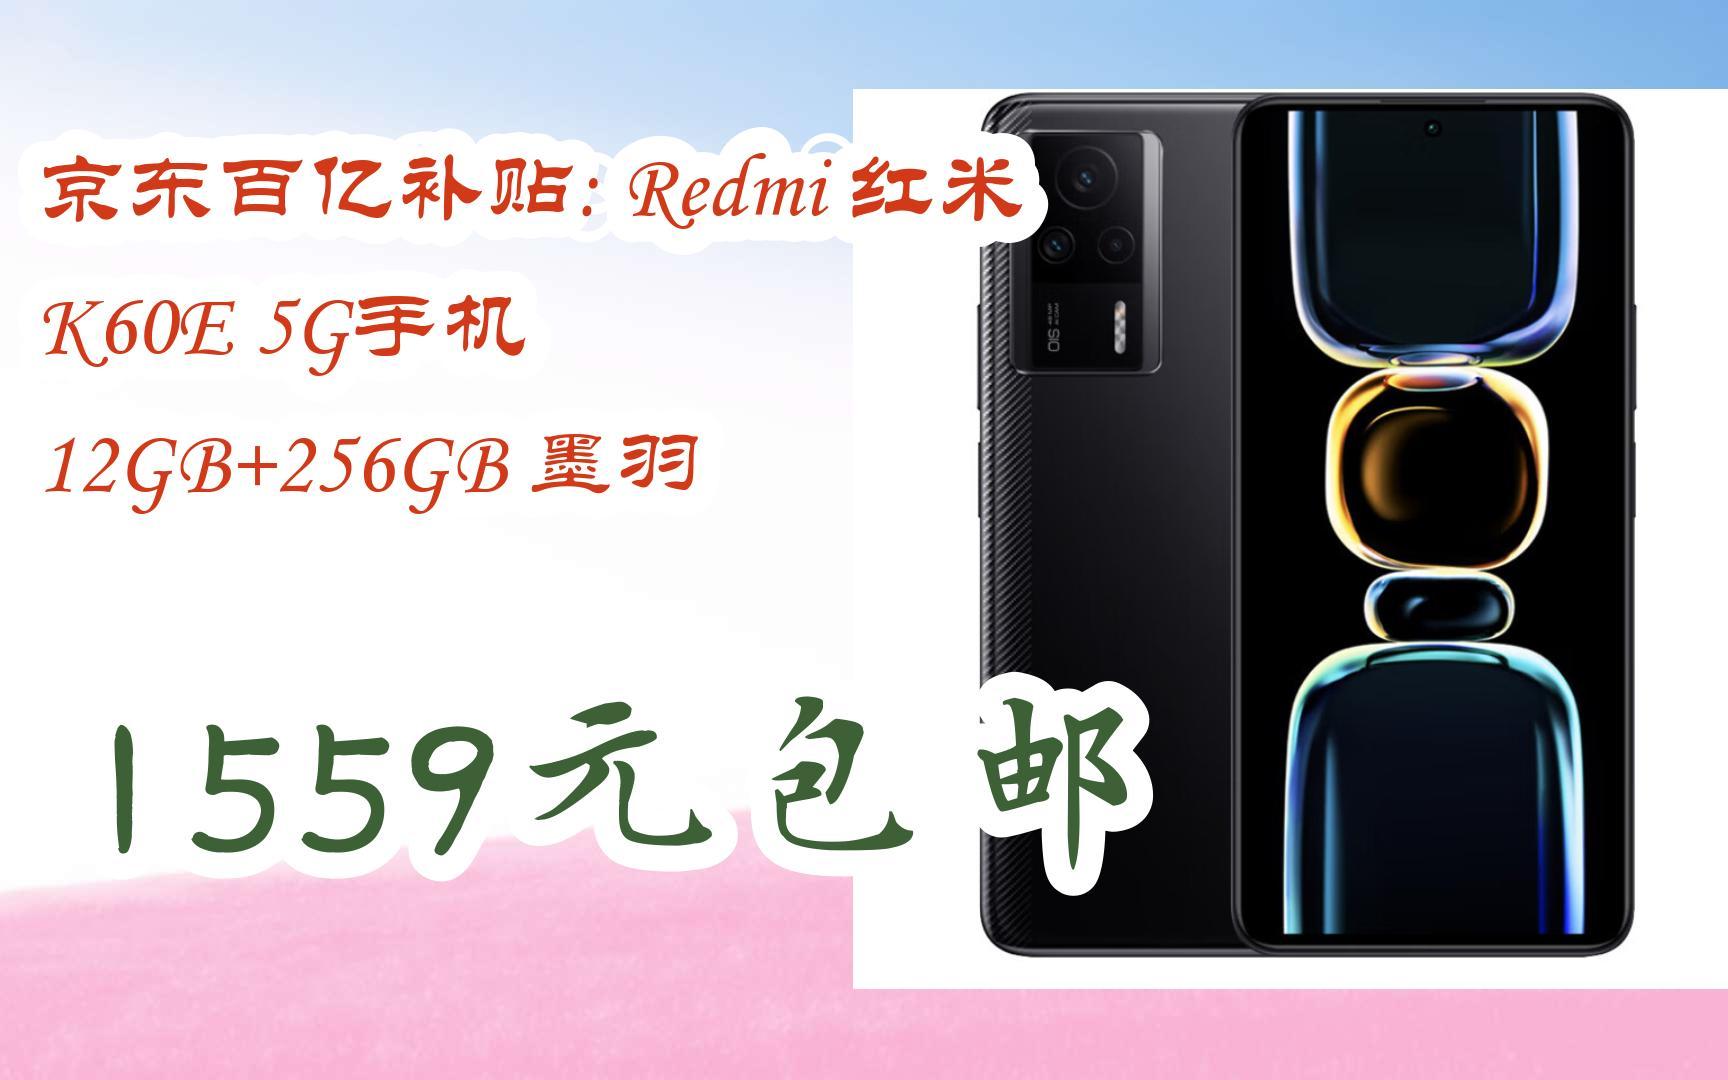 【抢购价】京东百亿补贴: redmi 红米 k60e 5g手机 12gb 256gb 墨羽